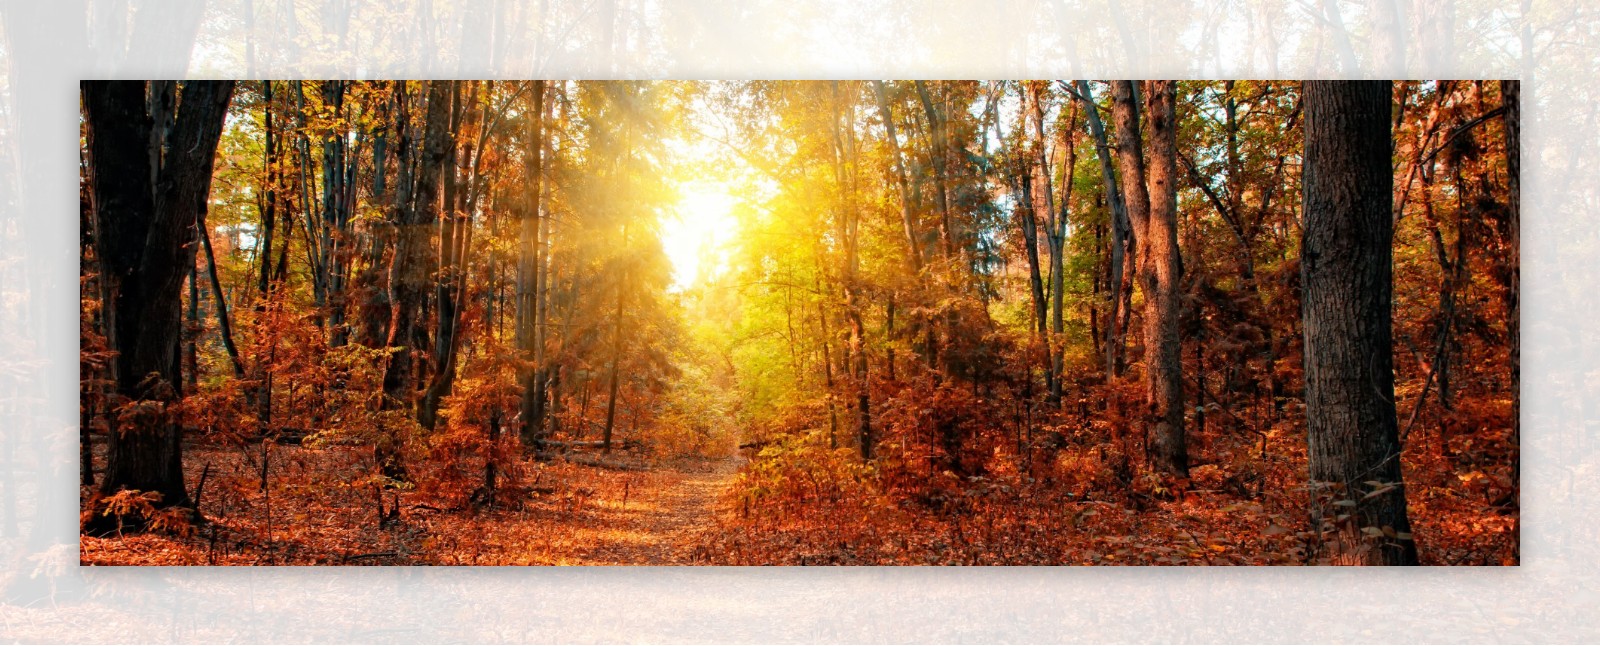 秋天树林黄昏美景图片